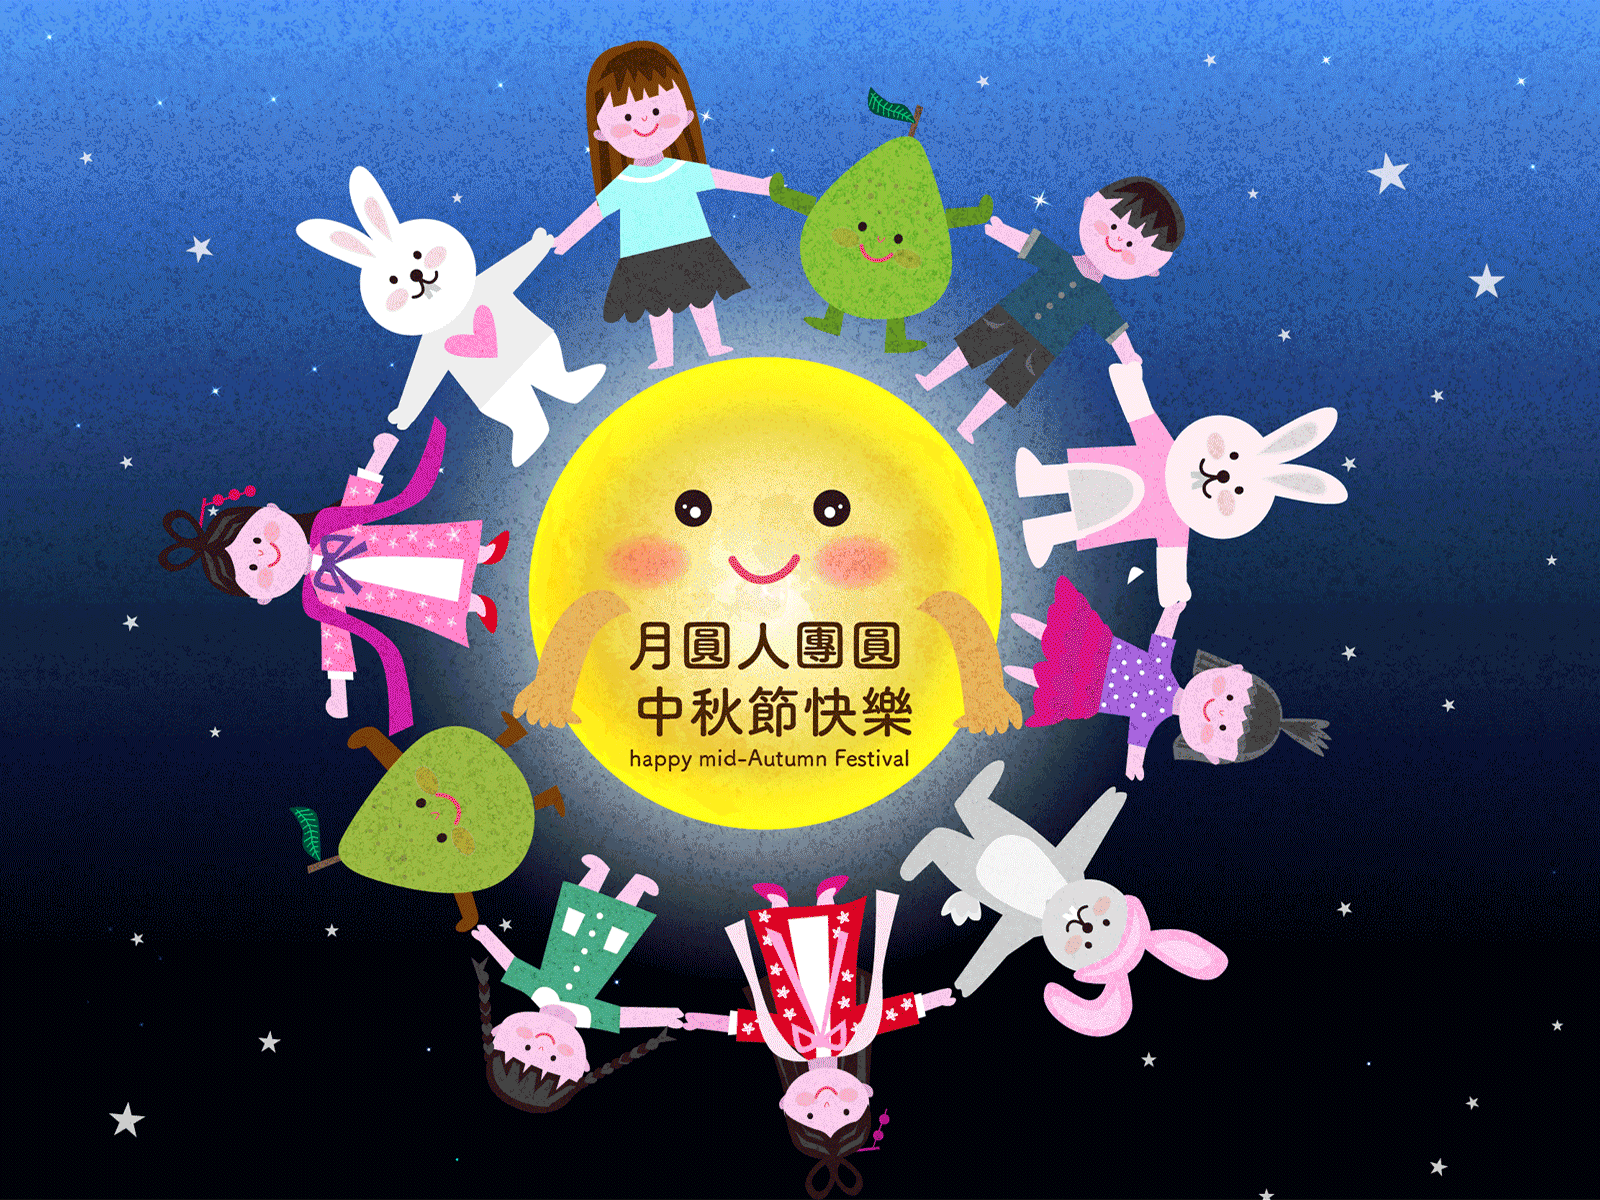 Happy mid-Autumn Festival children gif happy mid autumn festival illustration moon